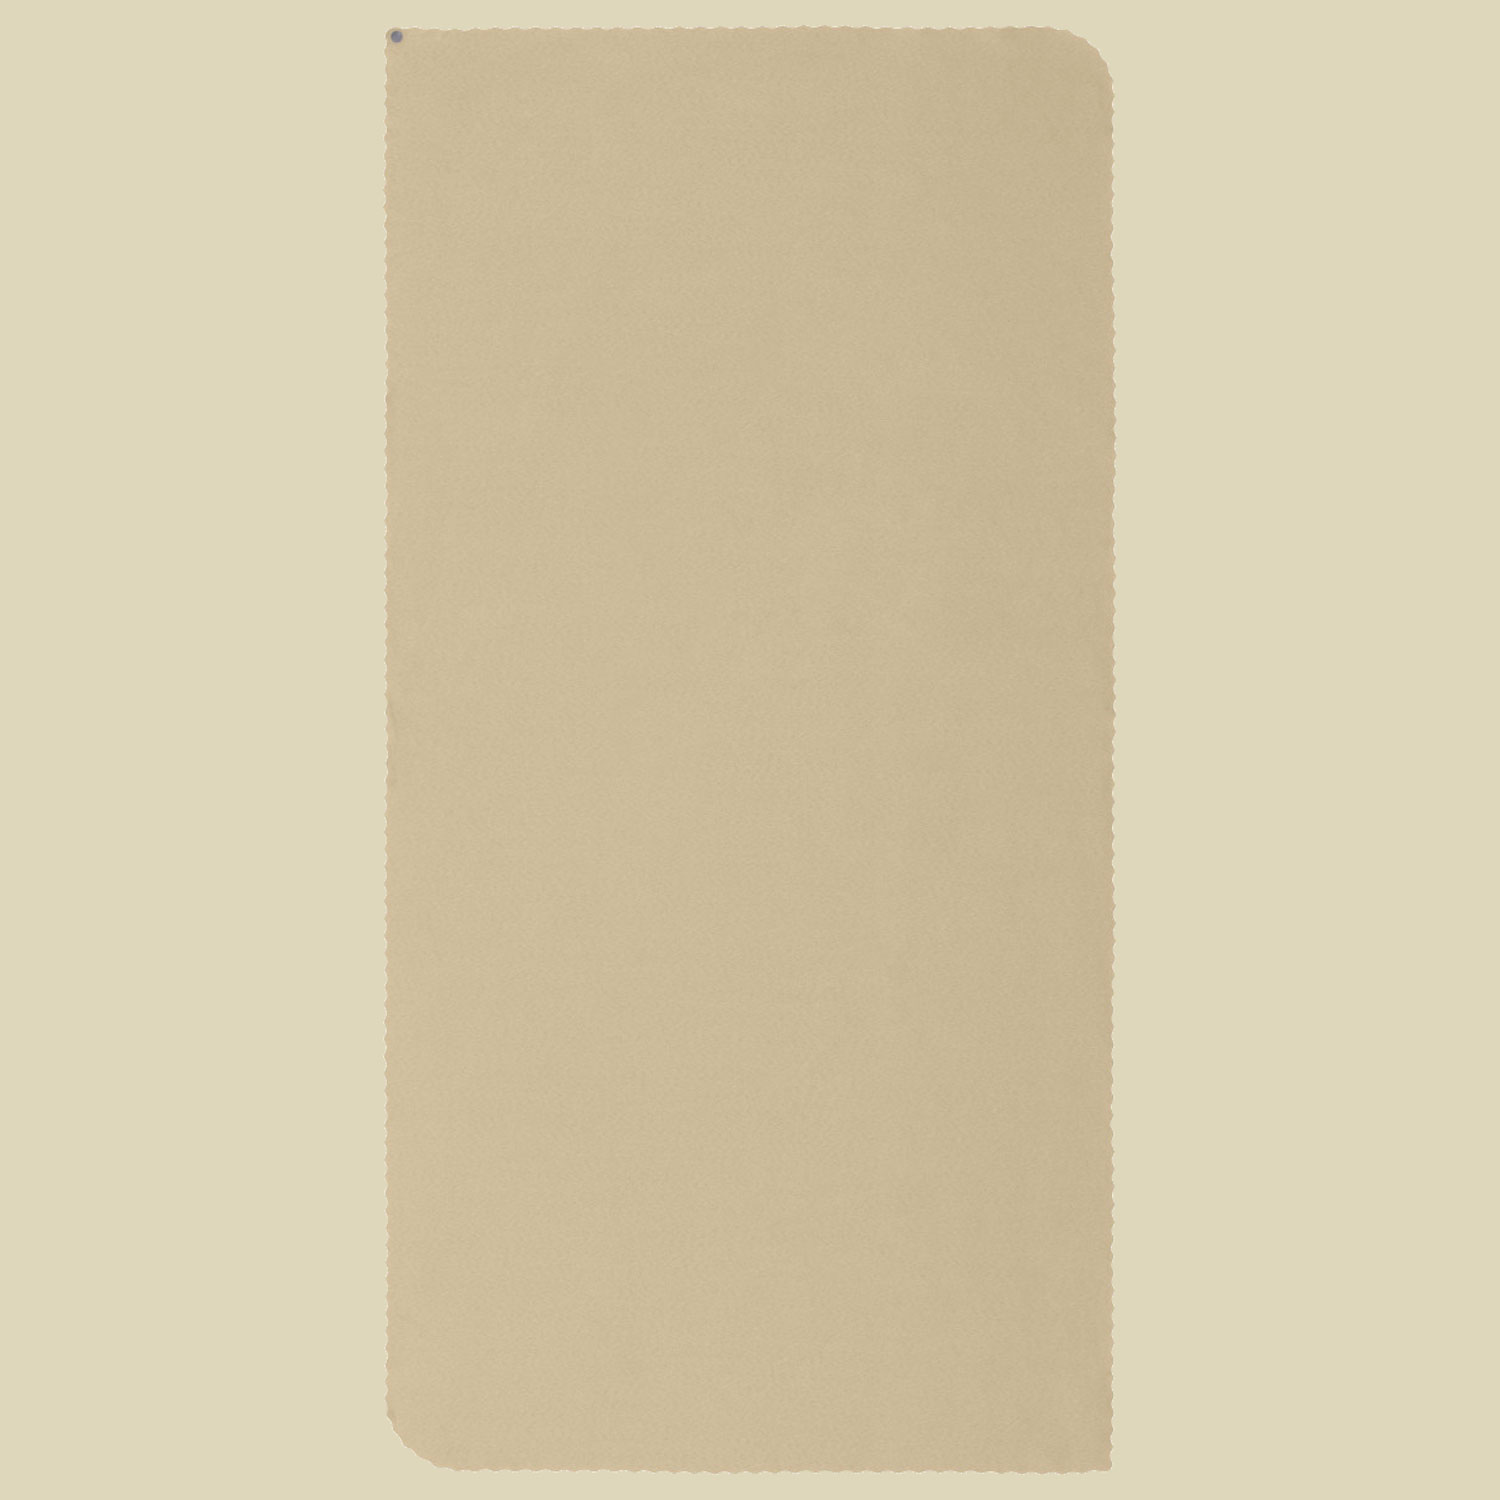 Airlite Towel Größe medium Farbe desert